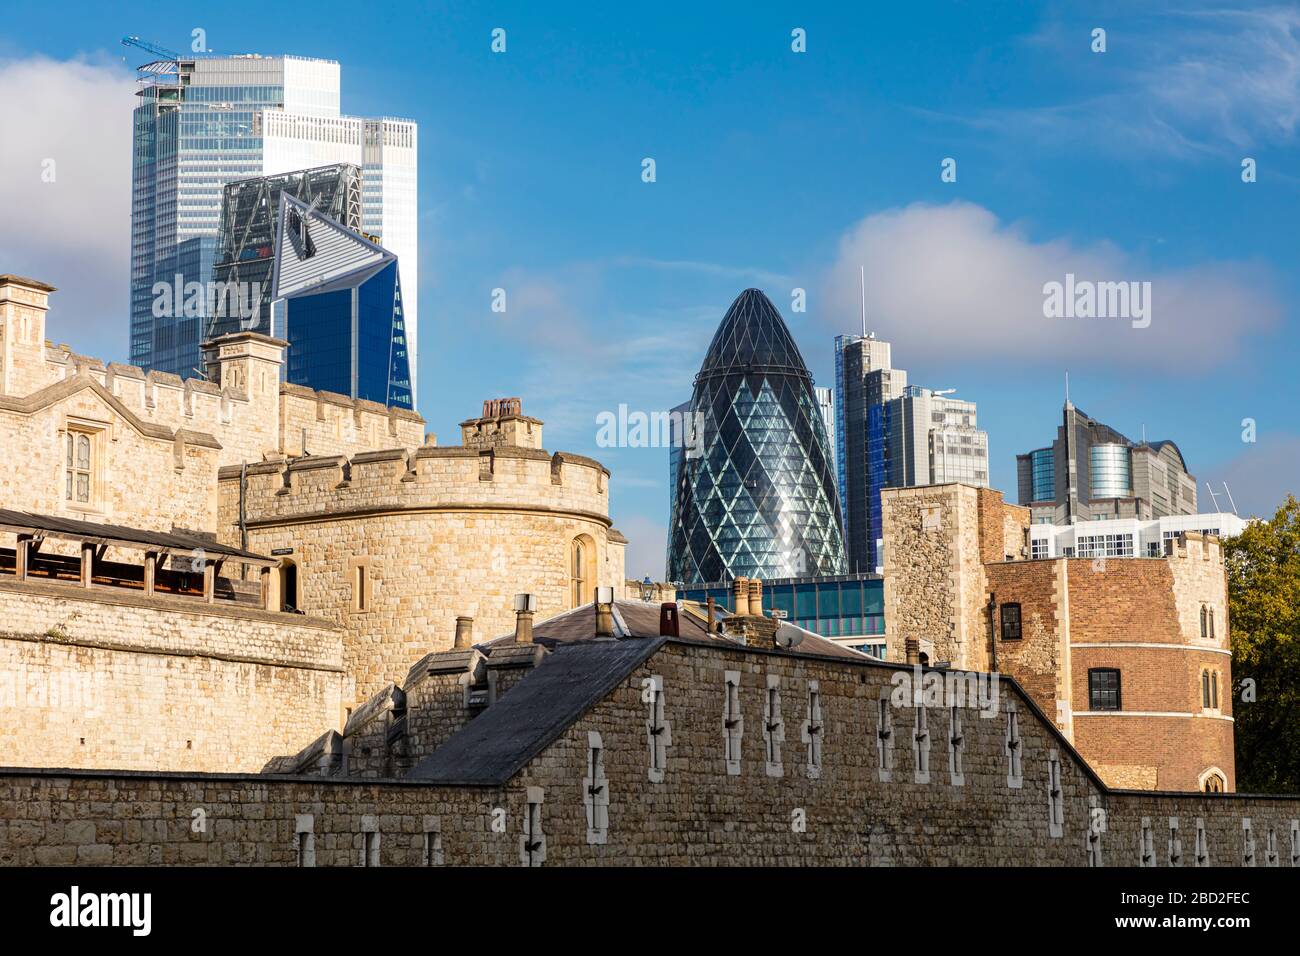 Old and New - Tour médiévale de Londres avec le Gherkin et les bâtiments modernes beyone, Londres, Angleterre, Royaume-Uni Banque D'Images